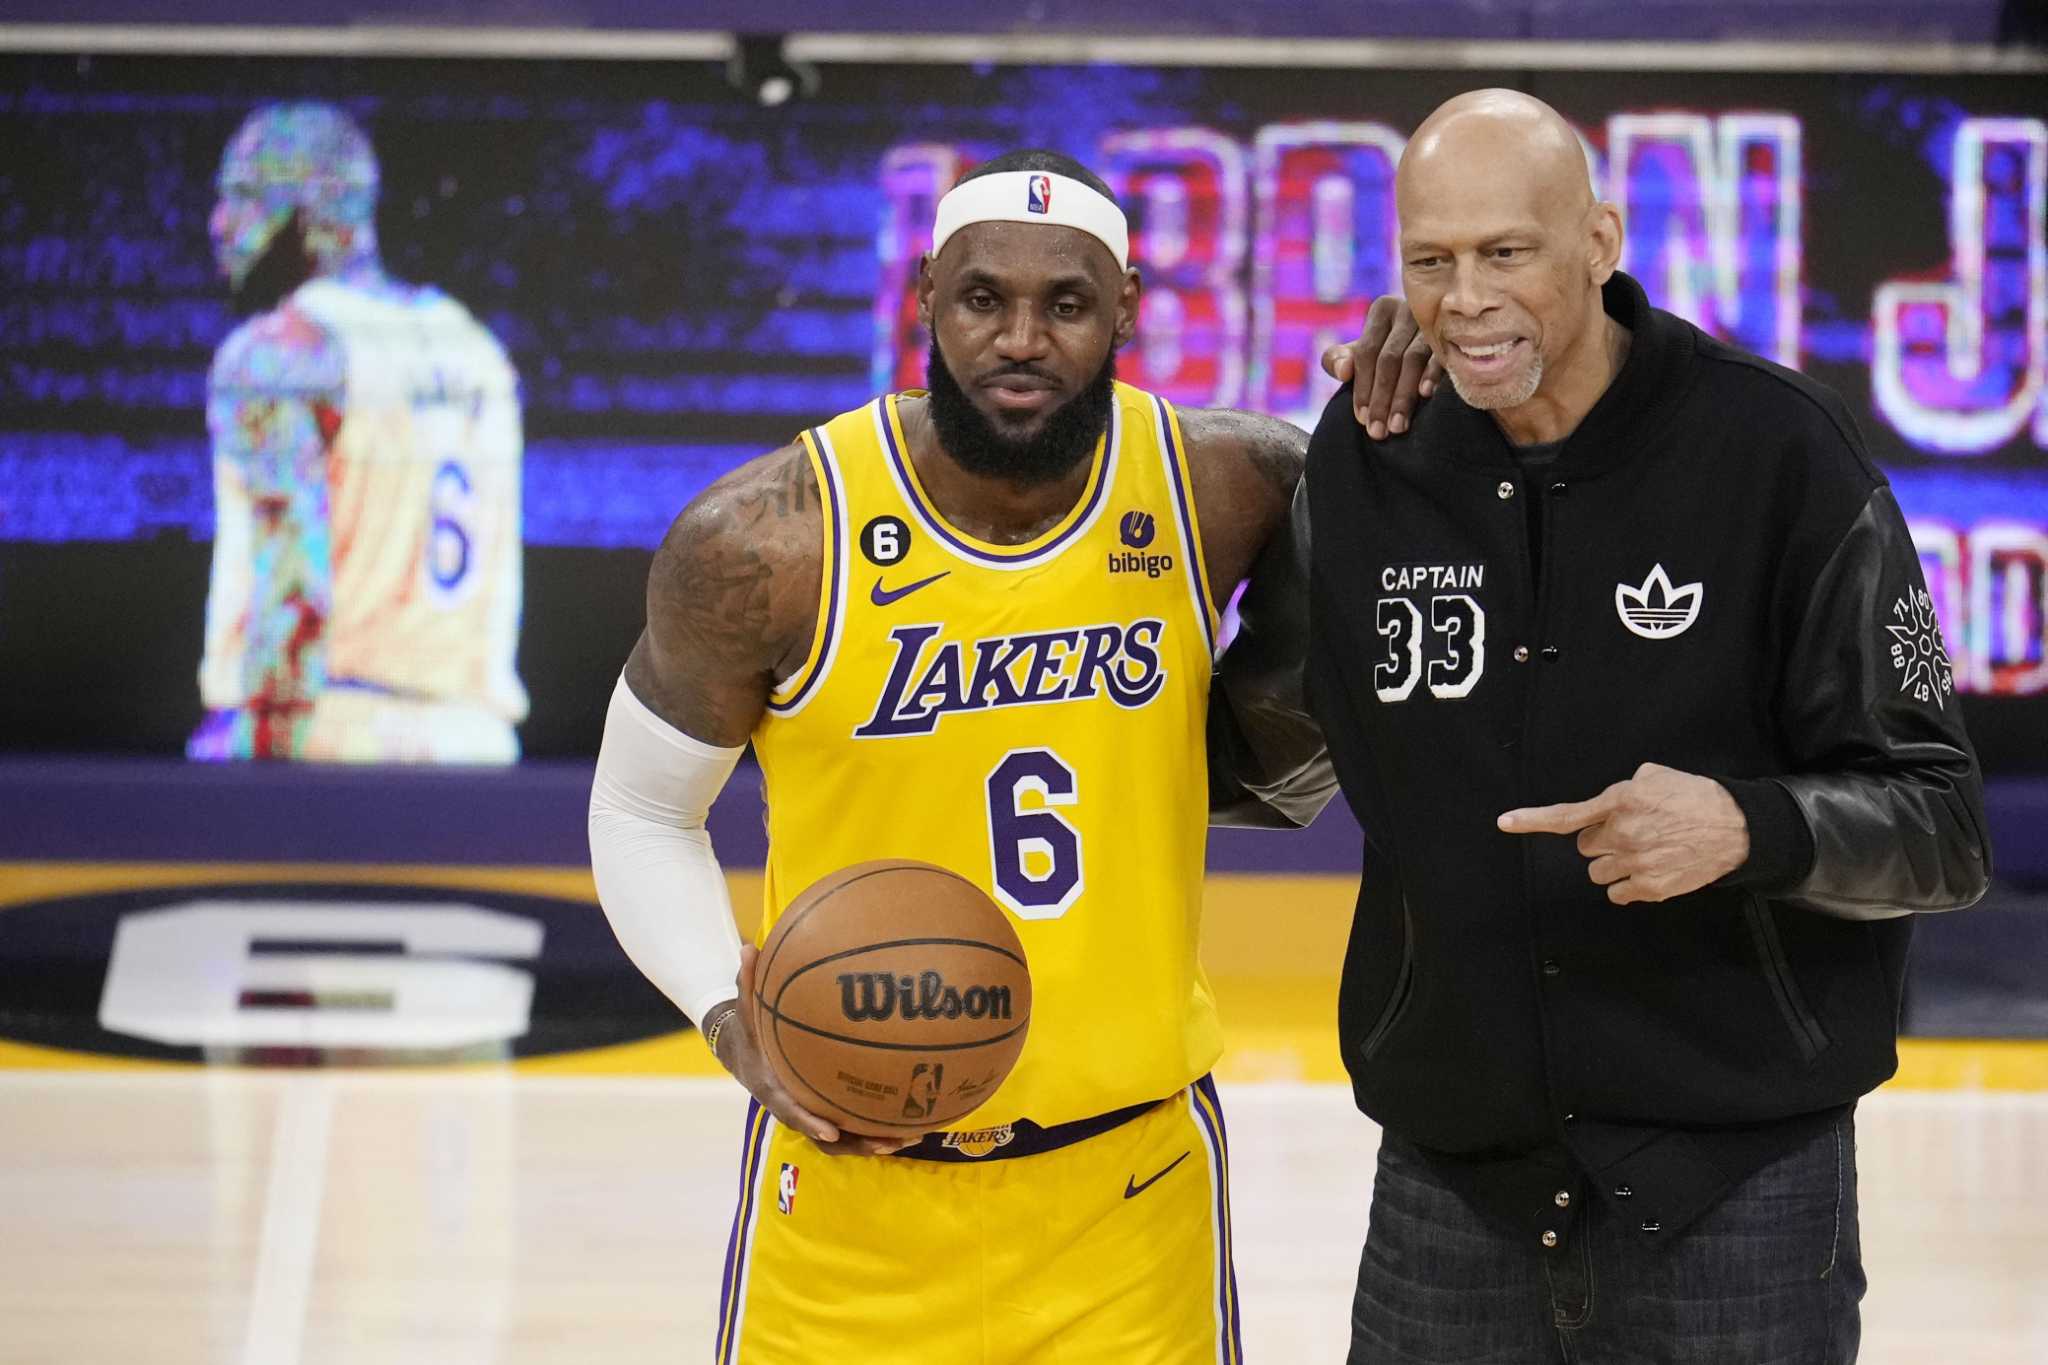 Kareem Abdul-Jabbar honors LeBron James in memorable moment